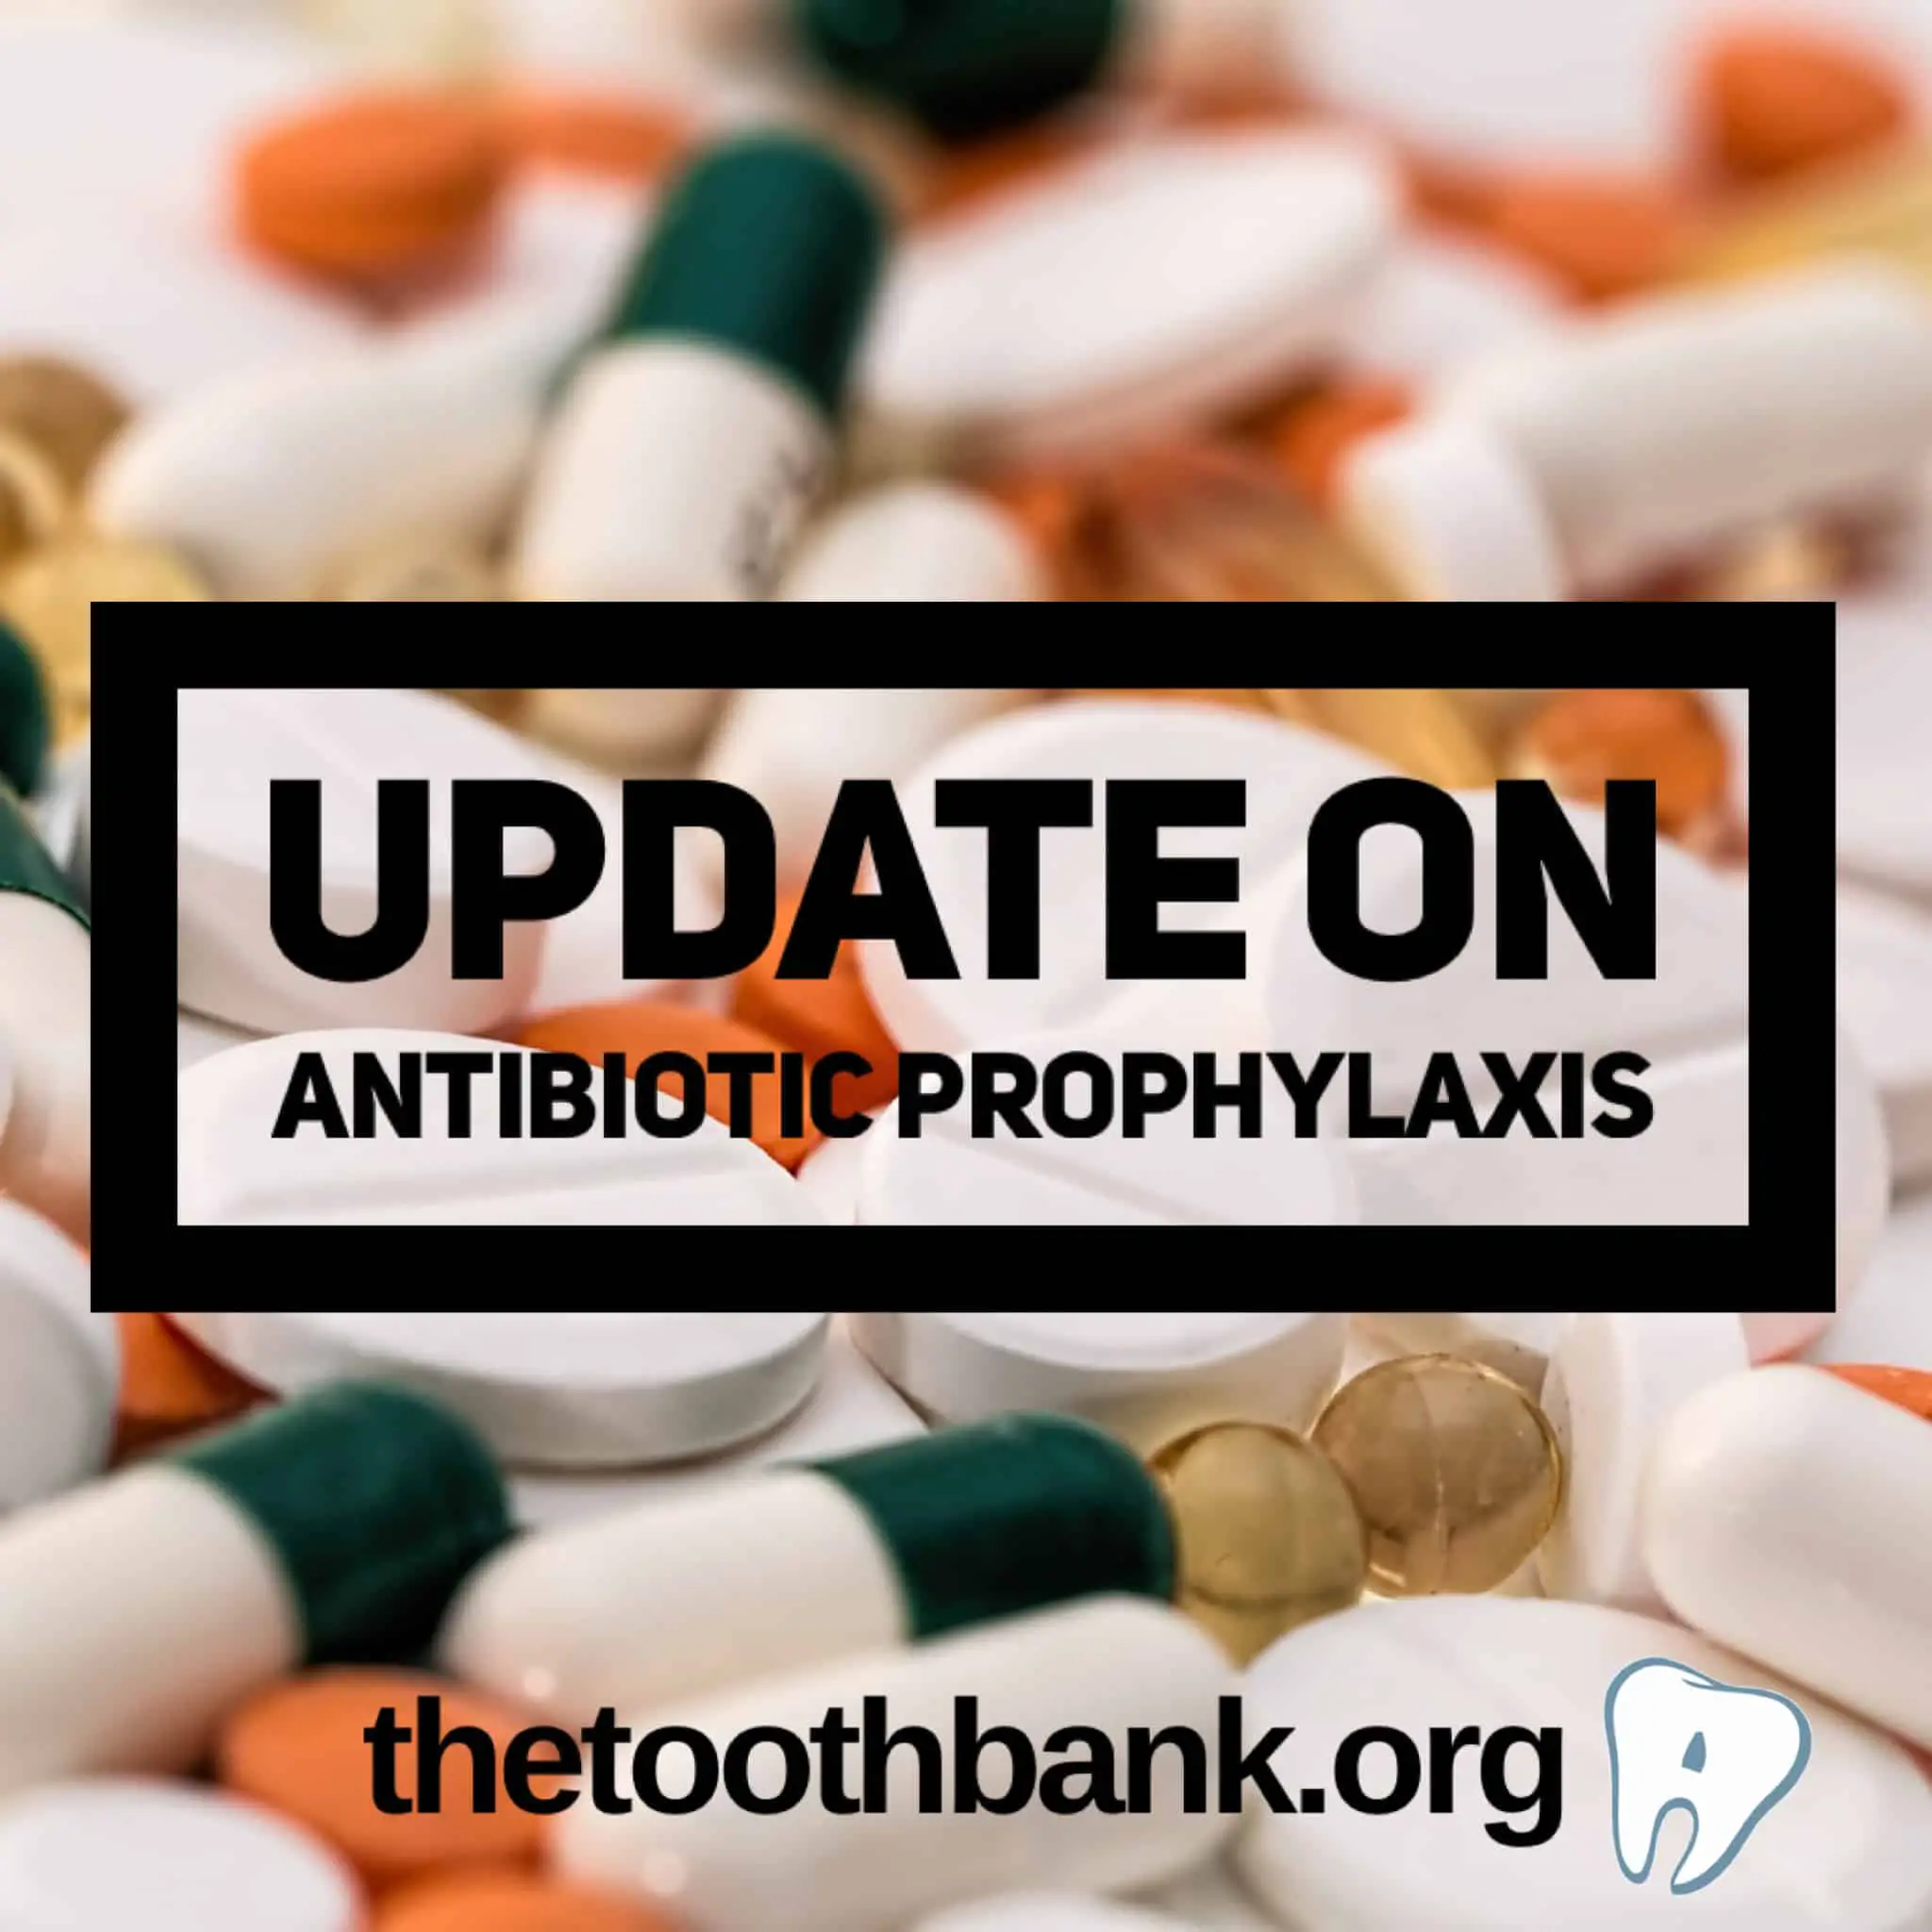 Update on Antibiotic Prophylaxis